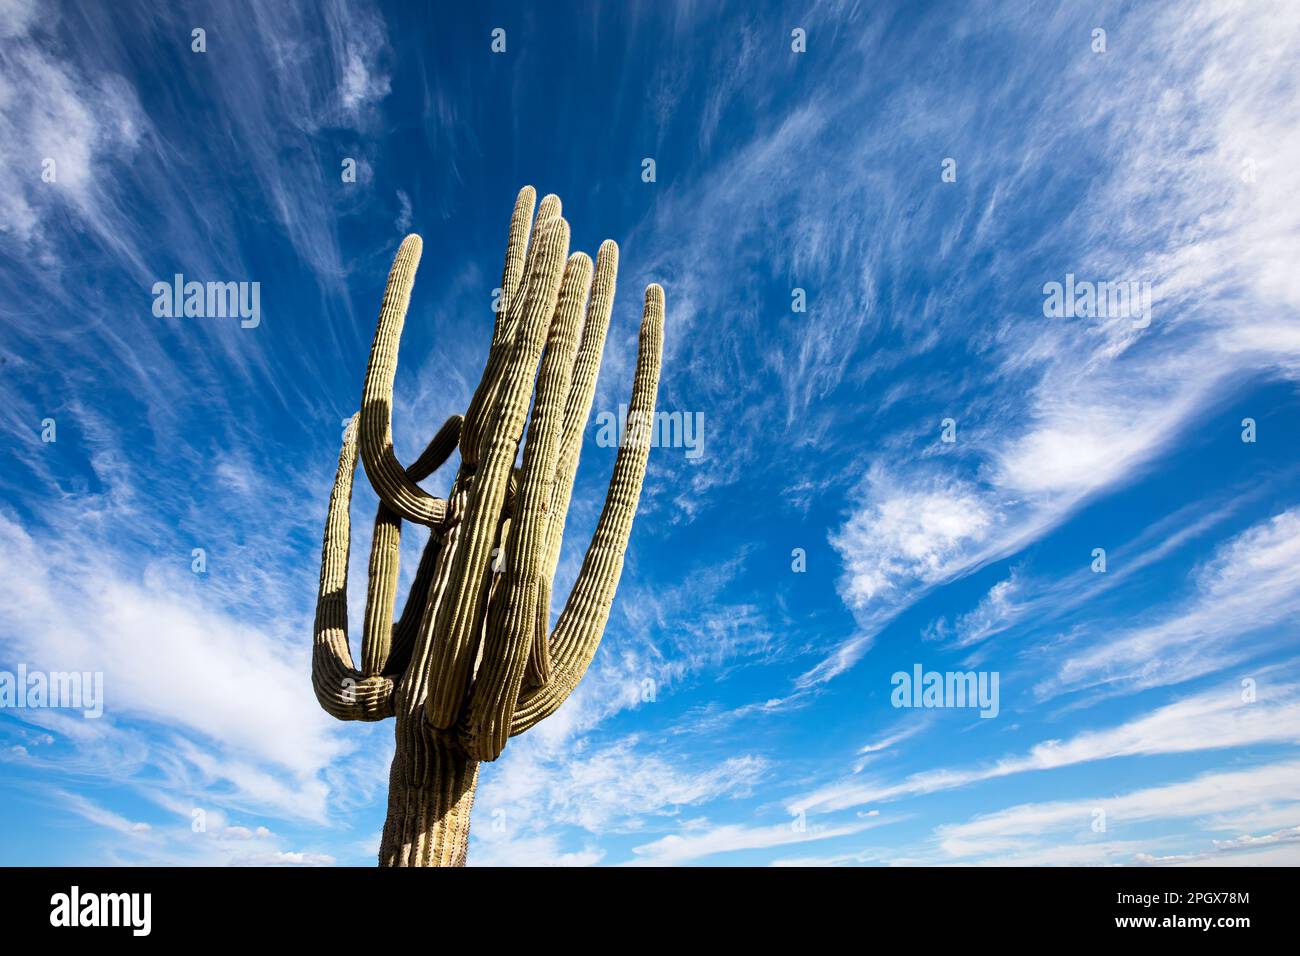 Géant Saguaro contre le ciel, McDowell Sonoran Preserve, Scottsdale, Arizona, Etats-Unis. Banque D'Images